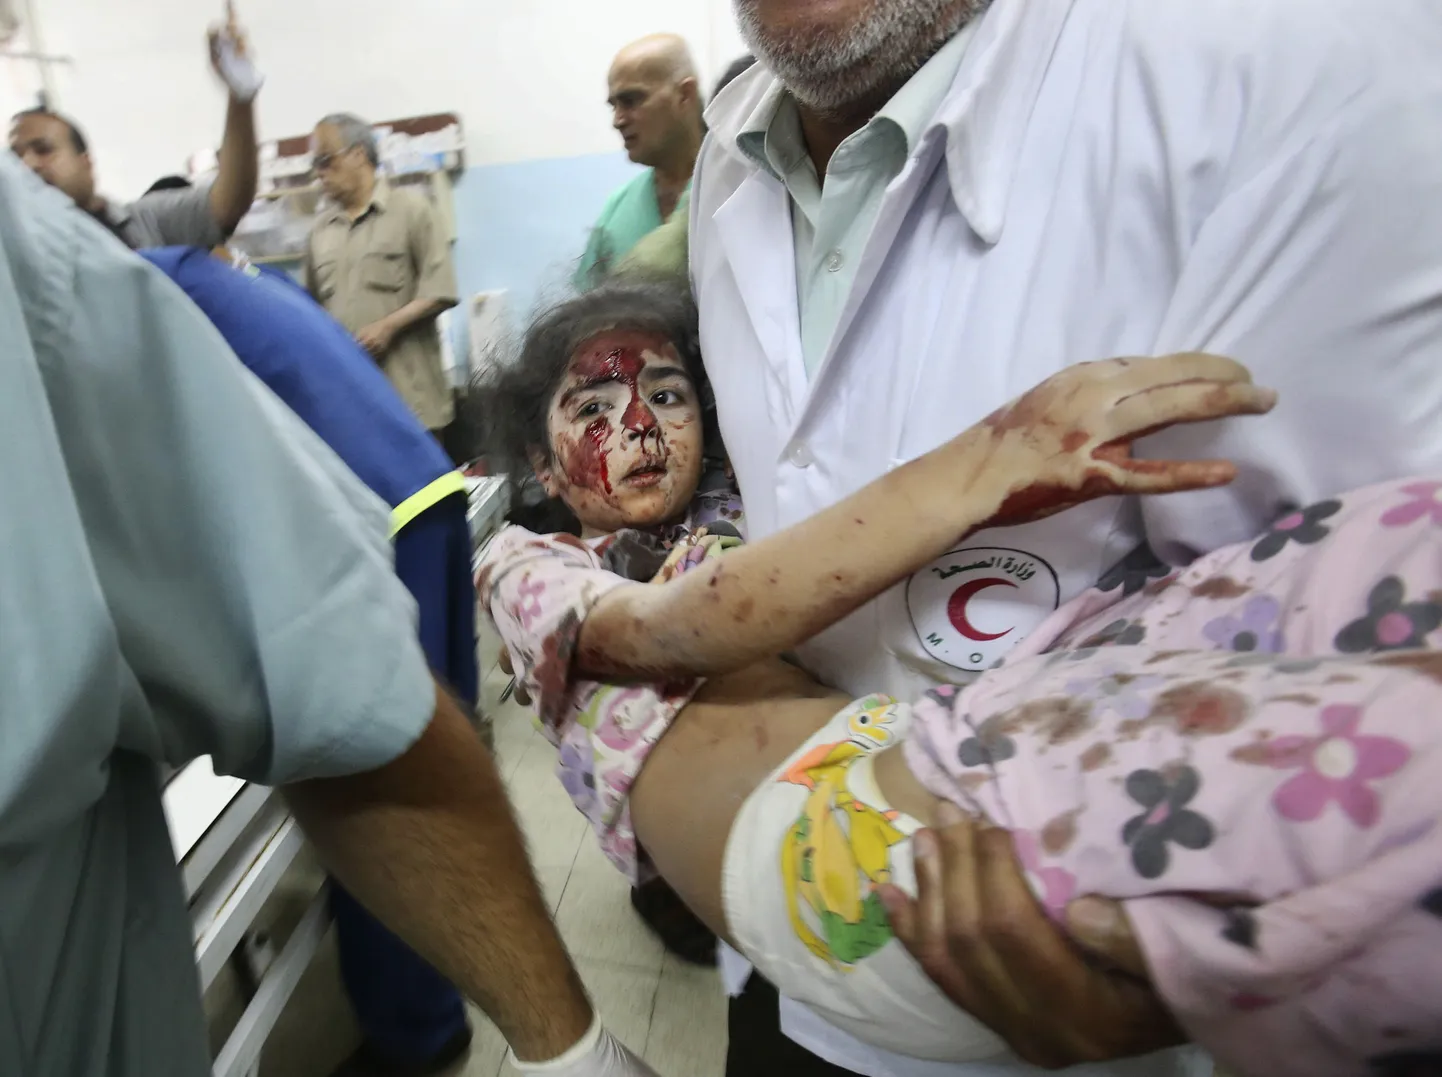 Gazasse tehtud õhurünnakus kannatada saanud laps